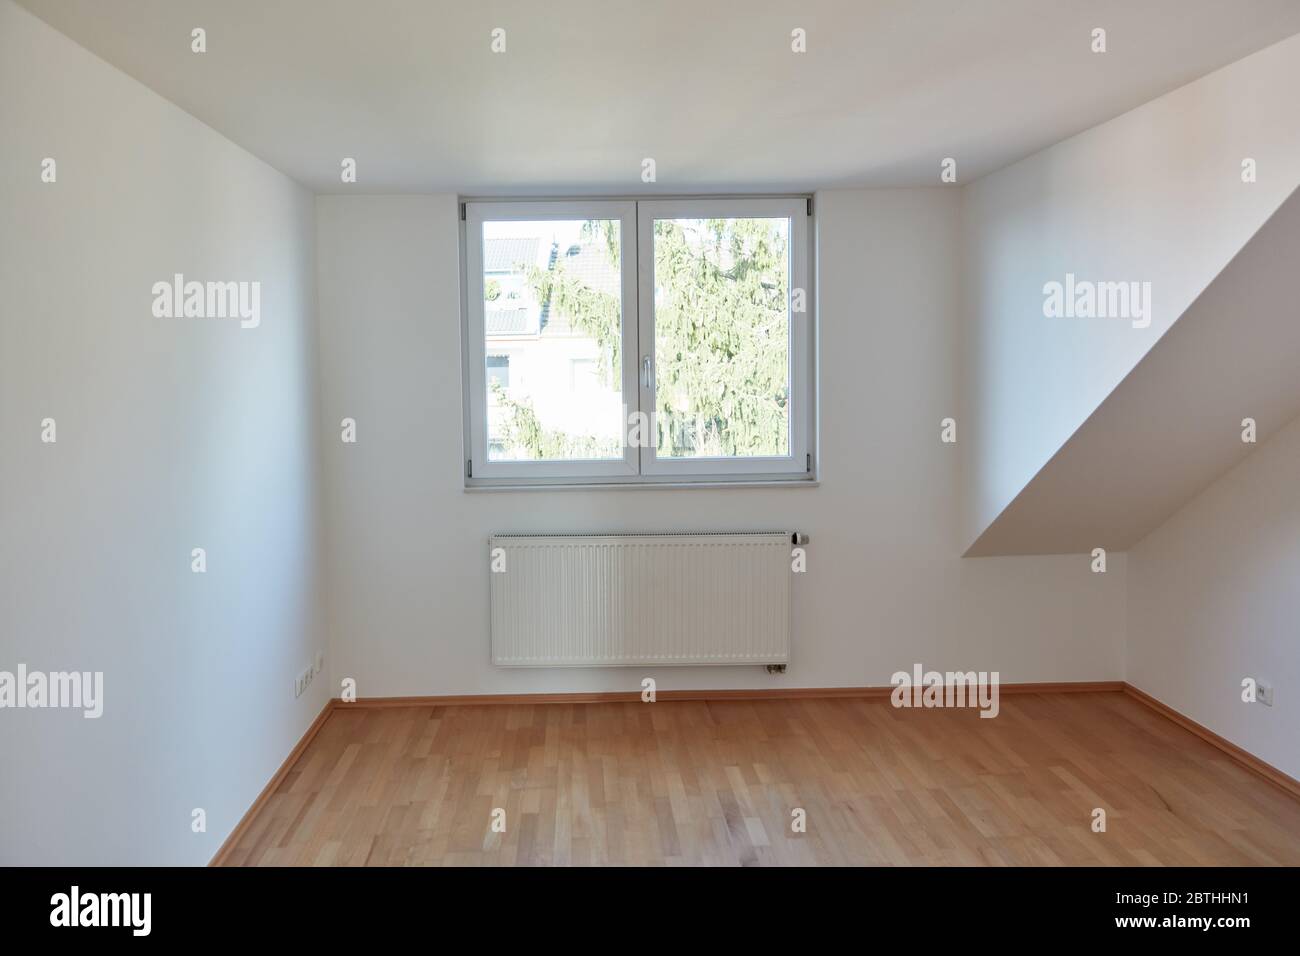 Camera interna vuota nella mansarda con parquet in legno e pareti bianche Foto Stock